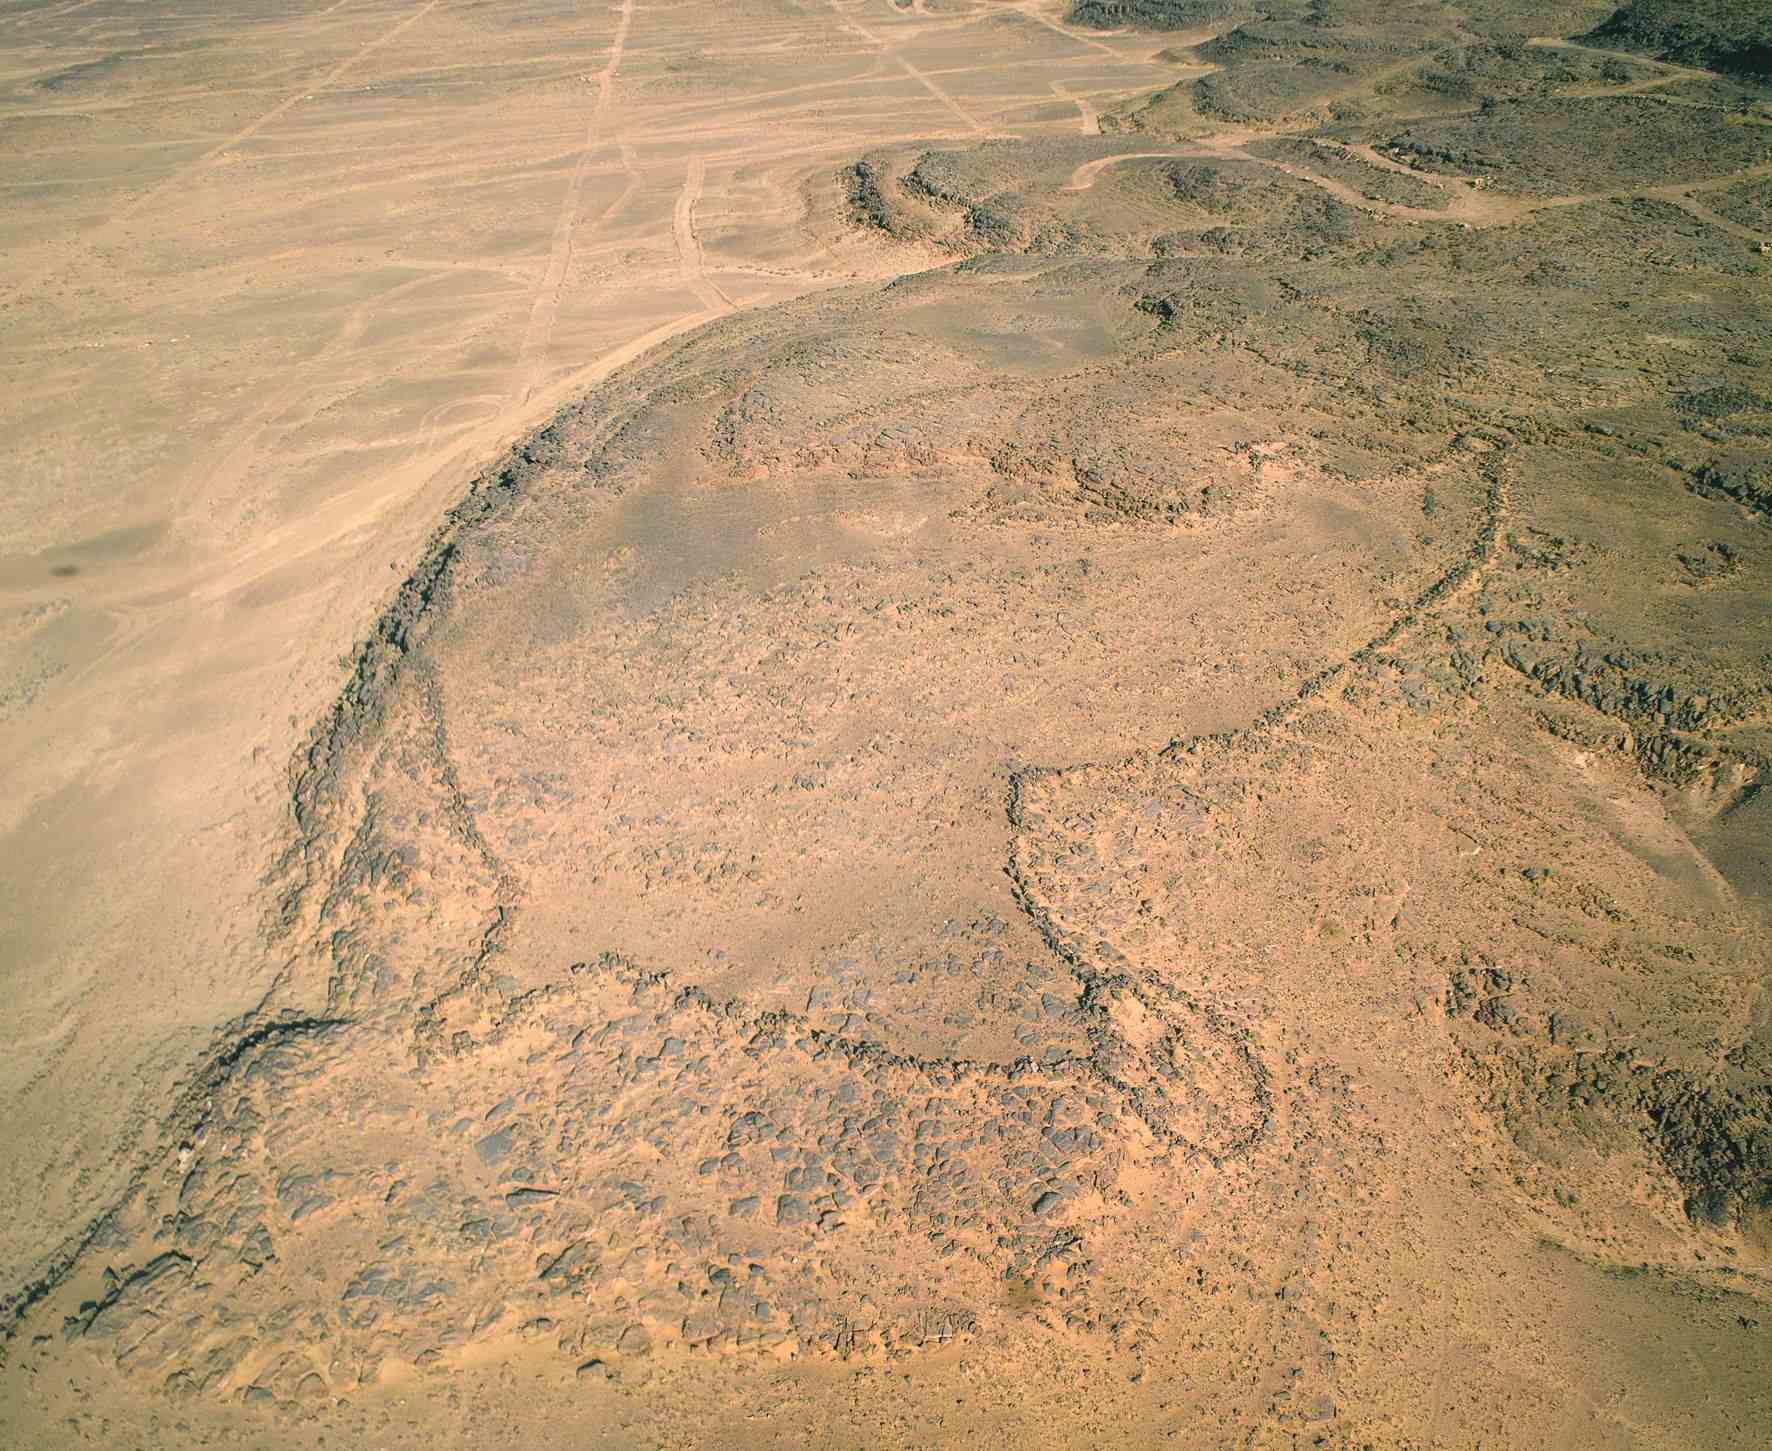 Esculturas rupestres de 8,000 anos na Arábia podem ser as plantas de megaestruturas mais antigas do mundo 2